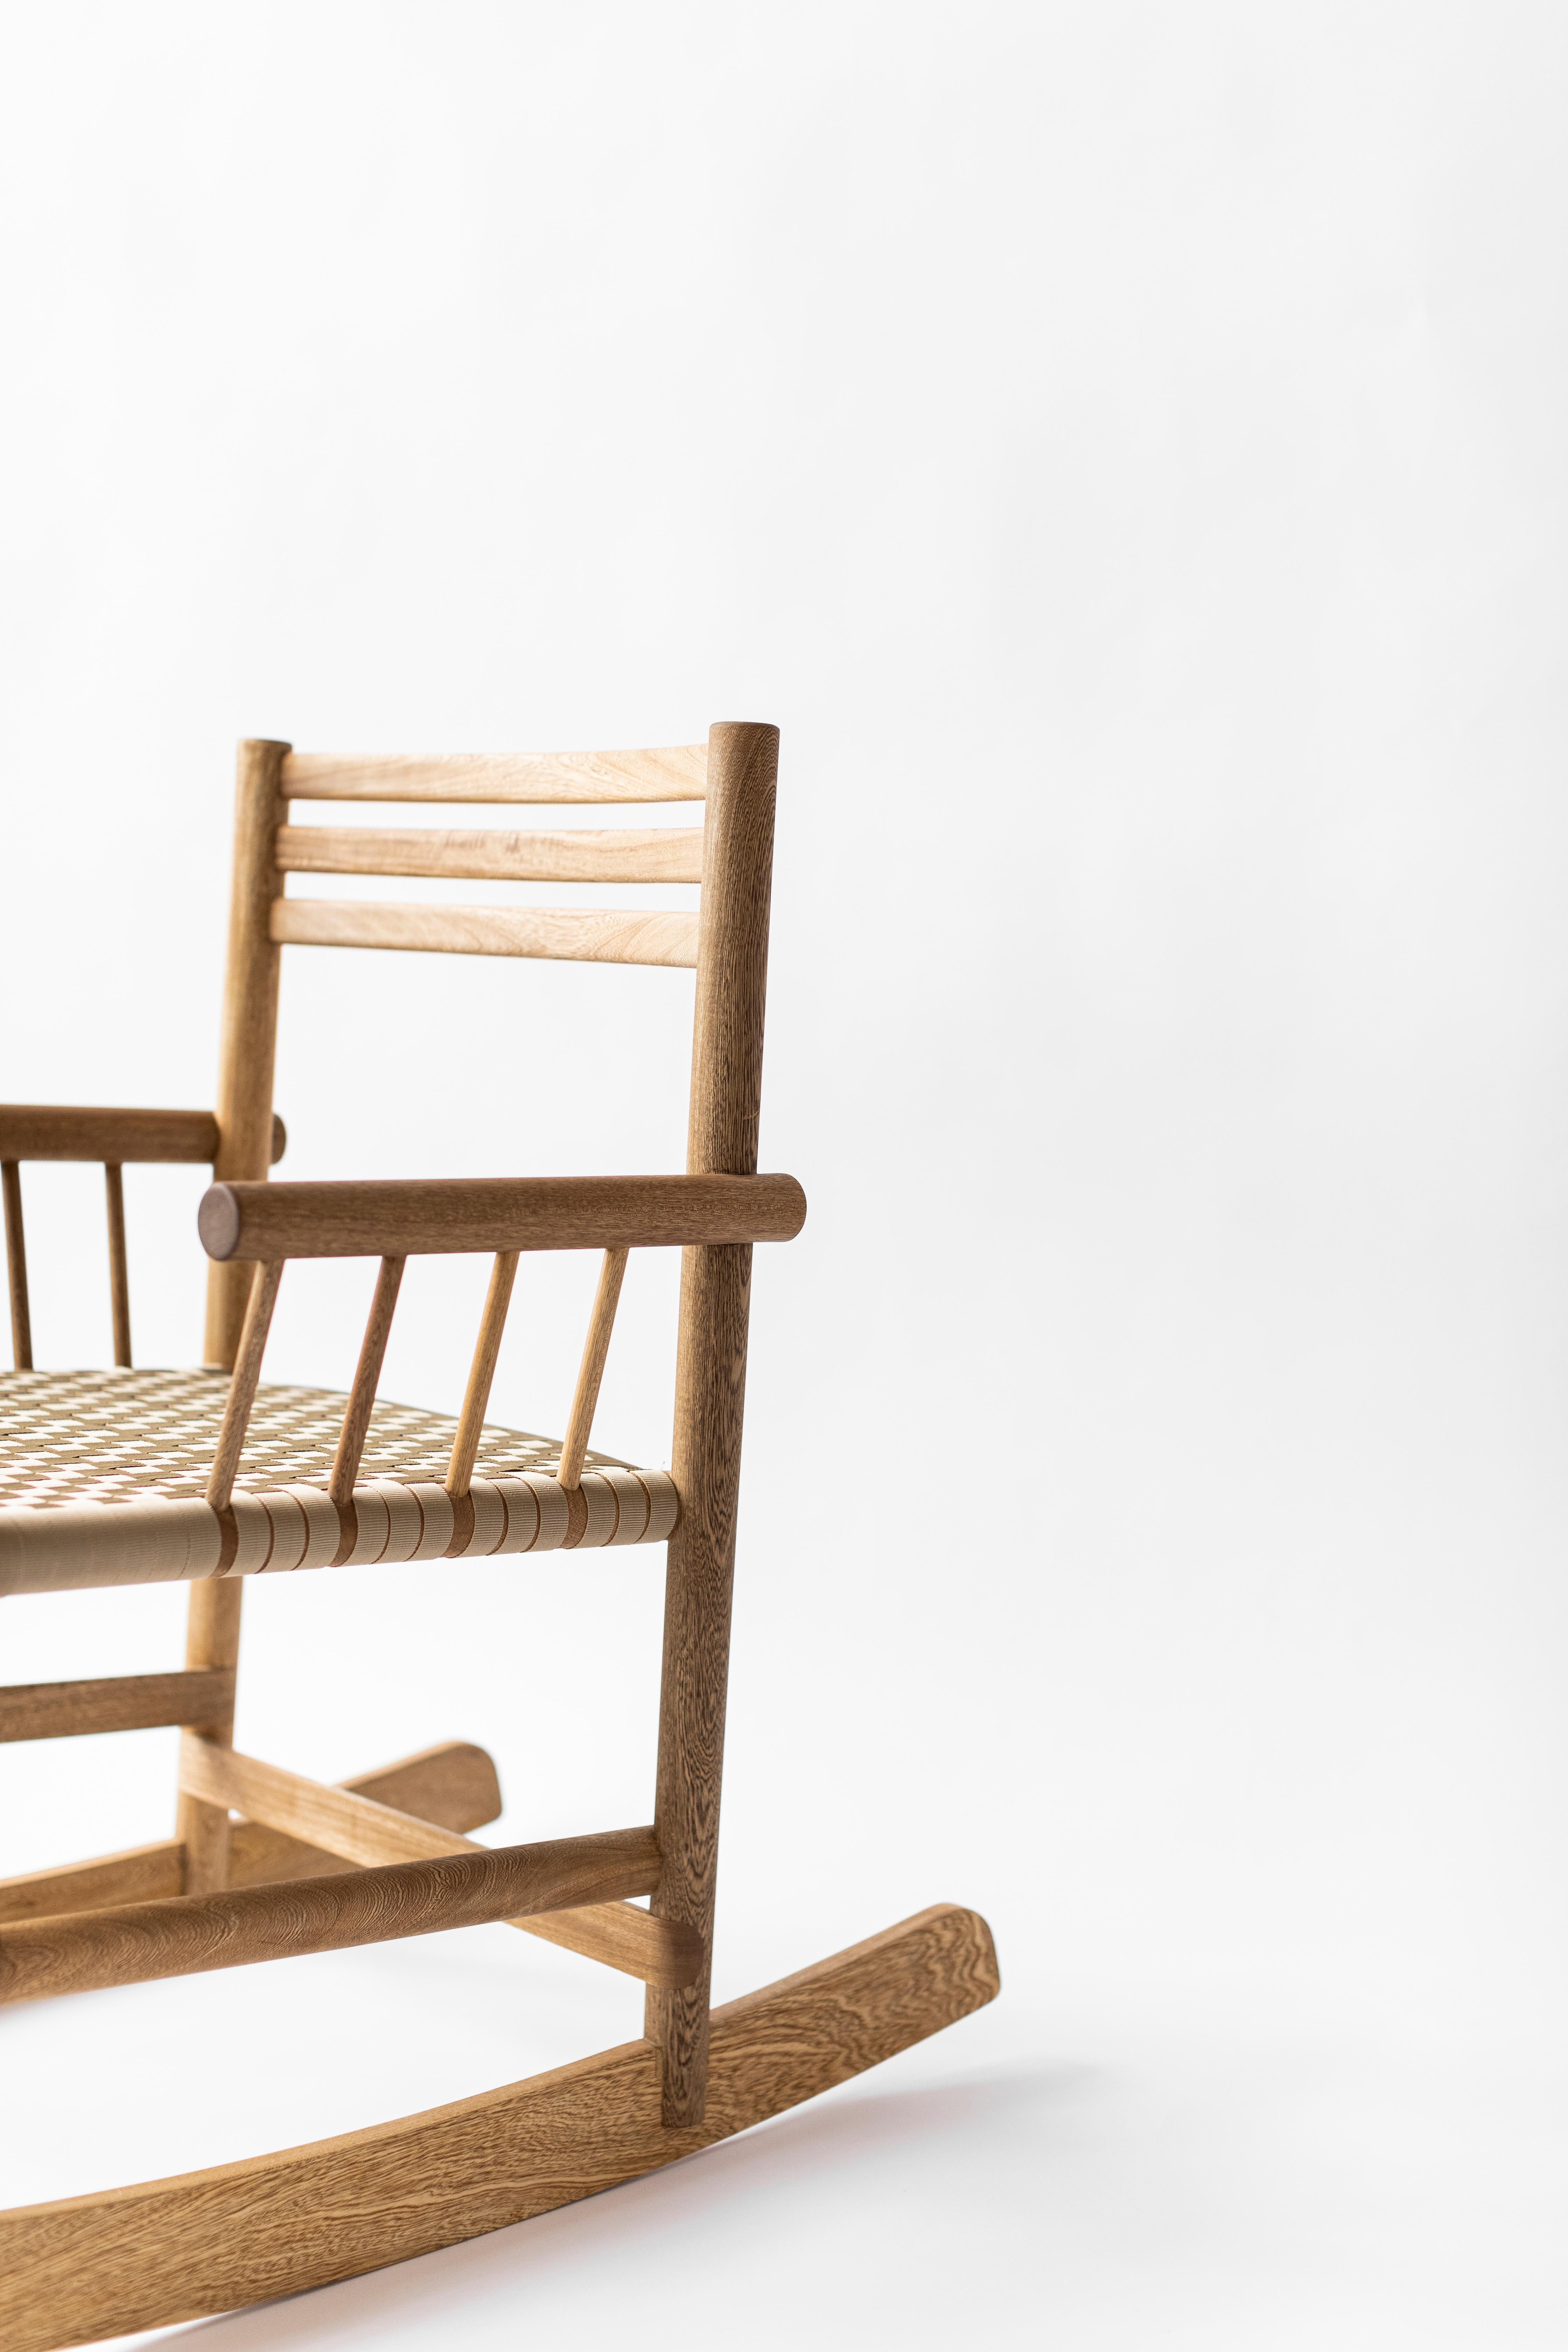 wooden rocker chair